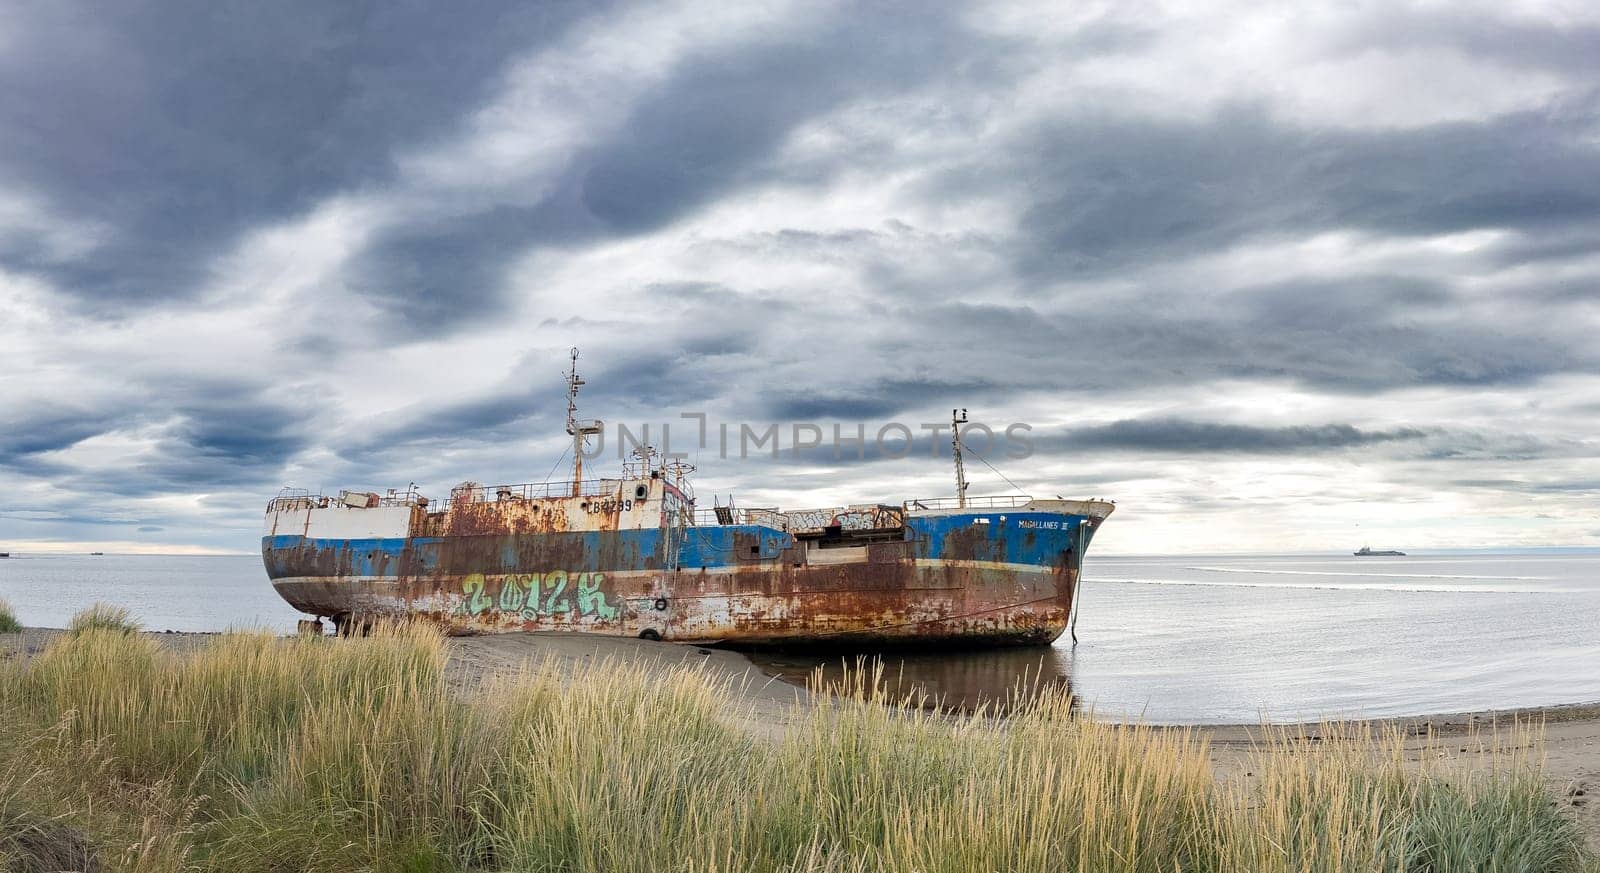 Rusty shipwreck on a peaceful beach under cloudy skies by FerradalFCG